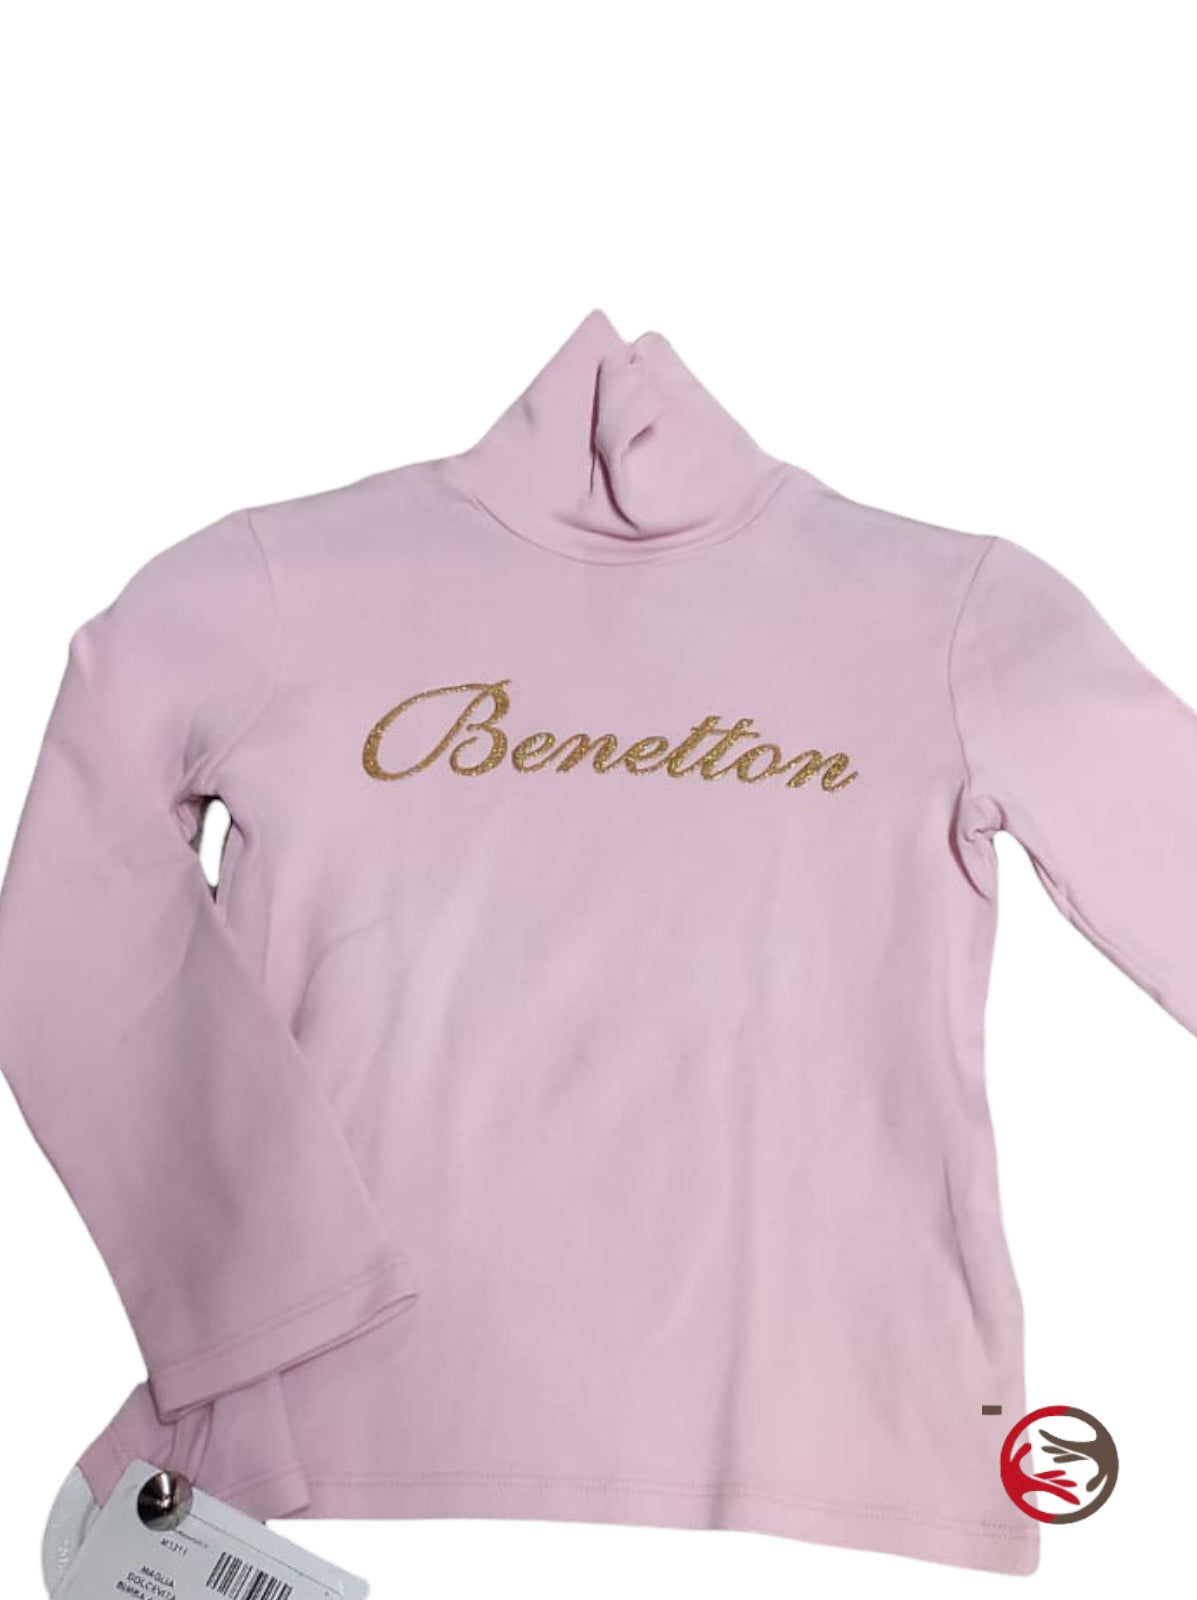 Maglia dolcevita rosa Benetton bambina 4 anni